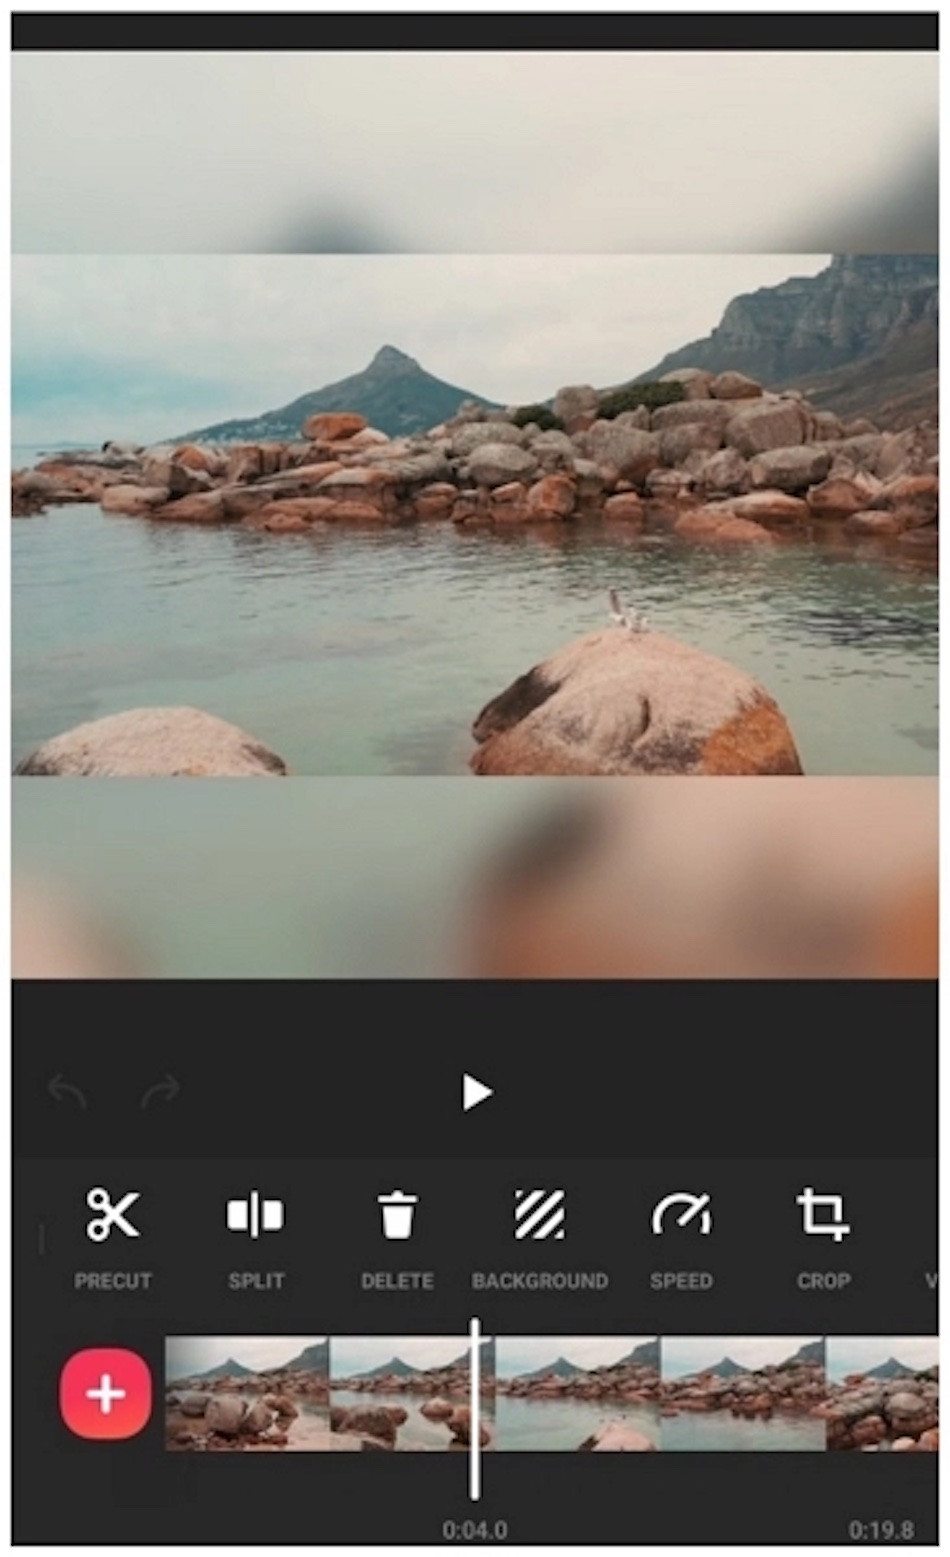 Интерфейс приложения для редактирования видео InShot показывает пляжную сцену и элементы управления редактированием.